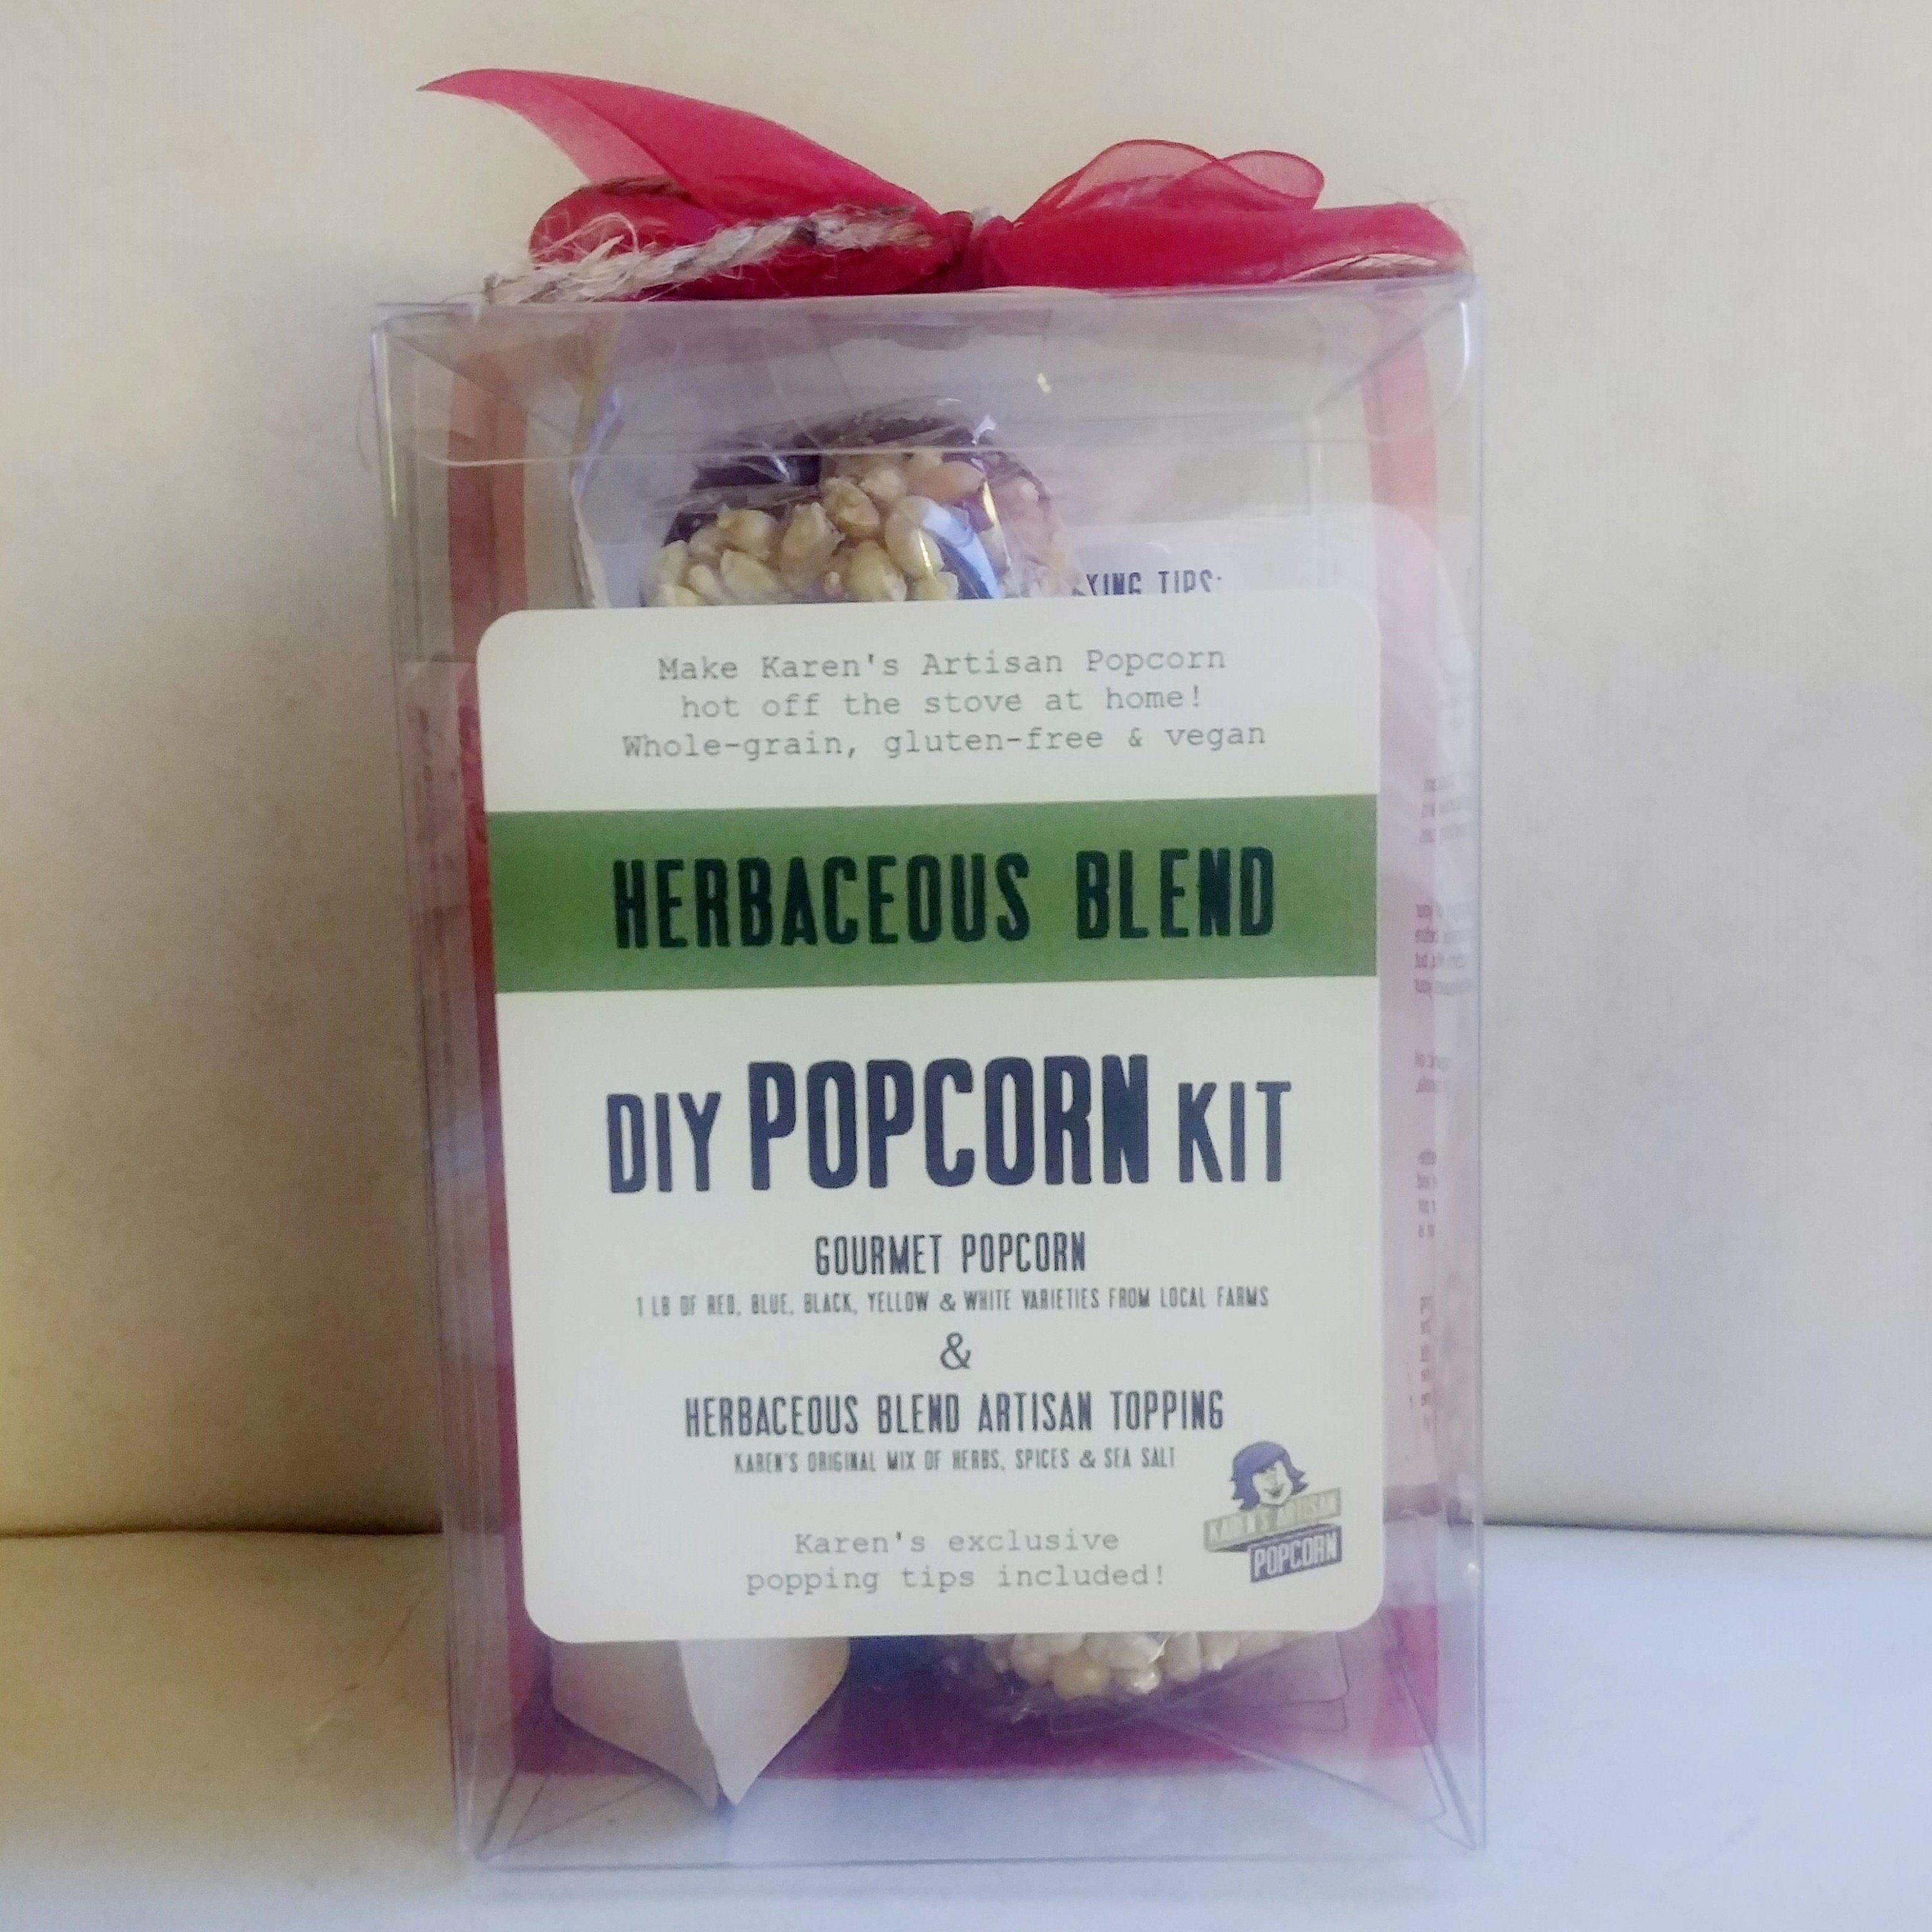 Diy Gourmet Popcorn Kit - Herbaceous Blend Mix